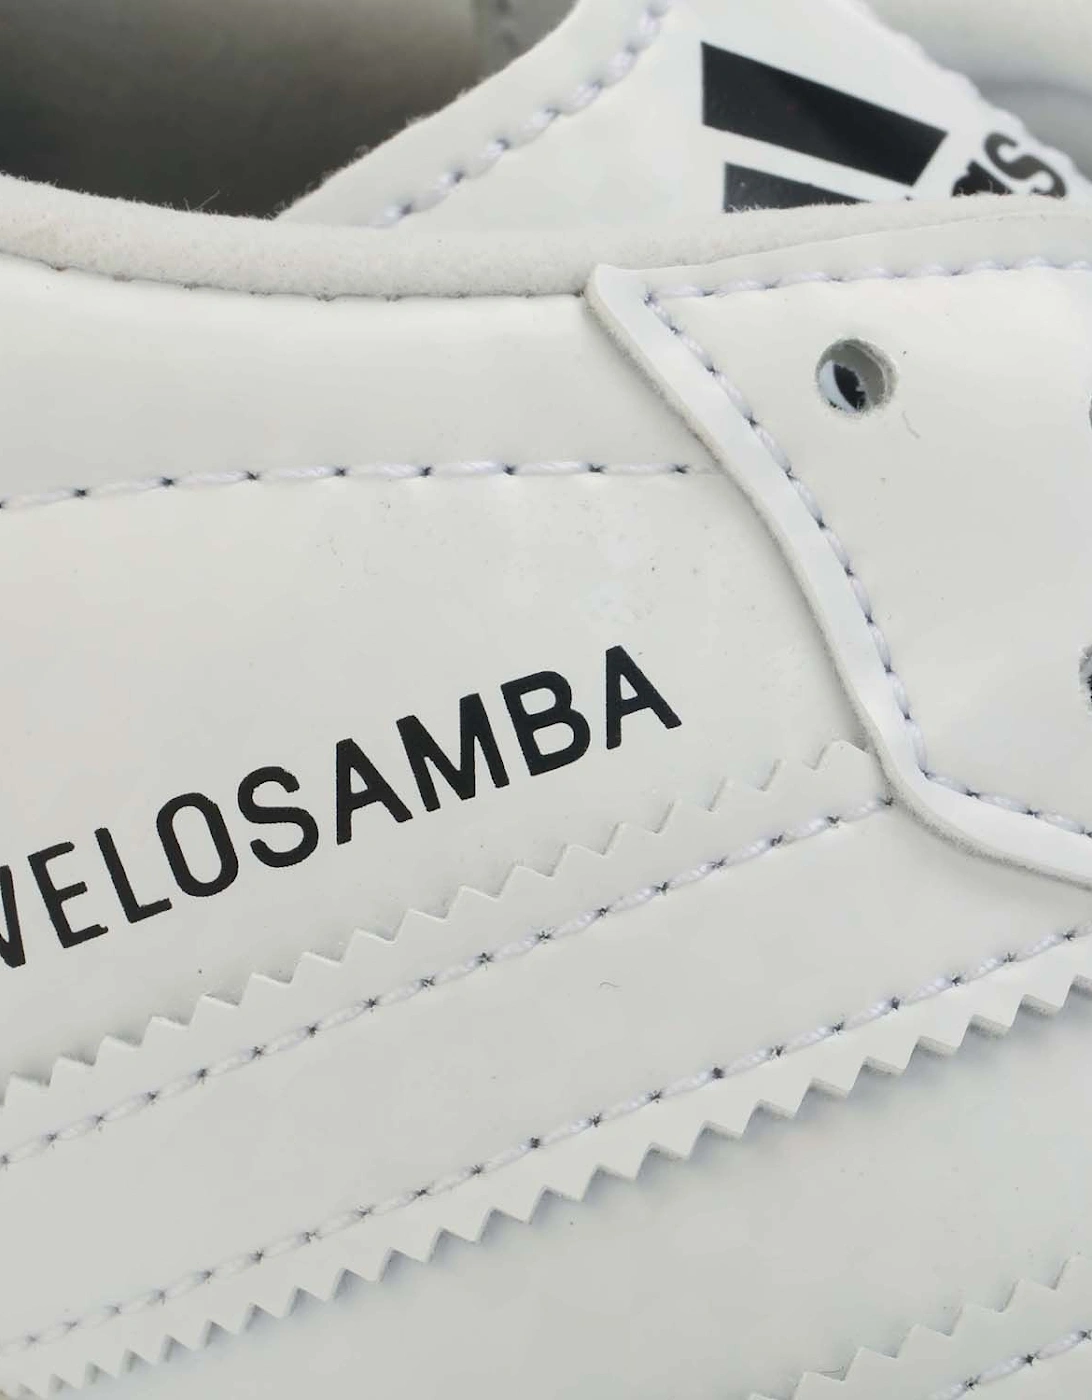 Velosamba Vegan Cycling Shoes